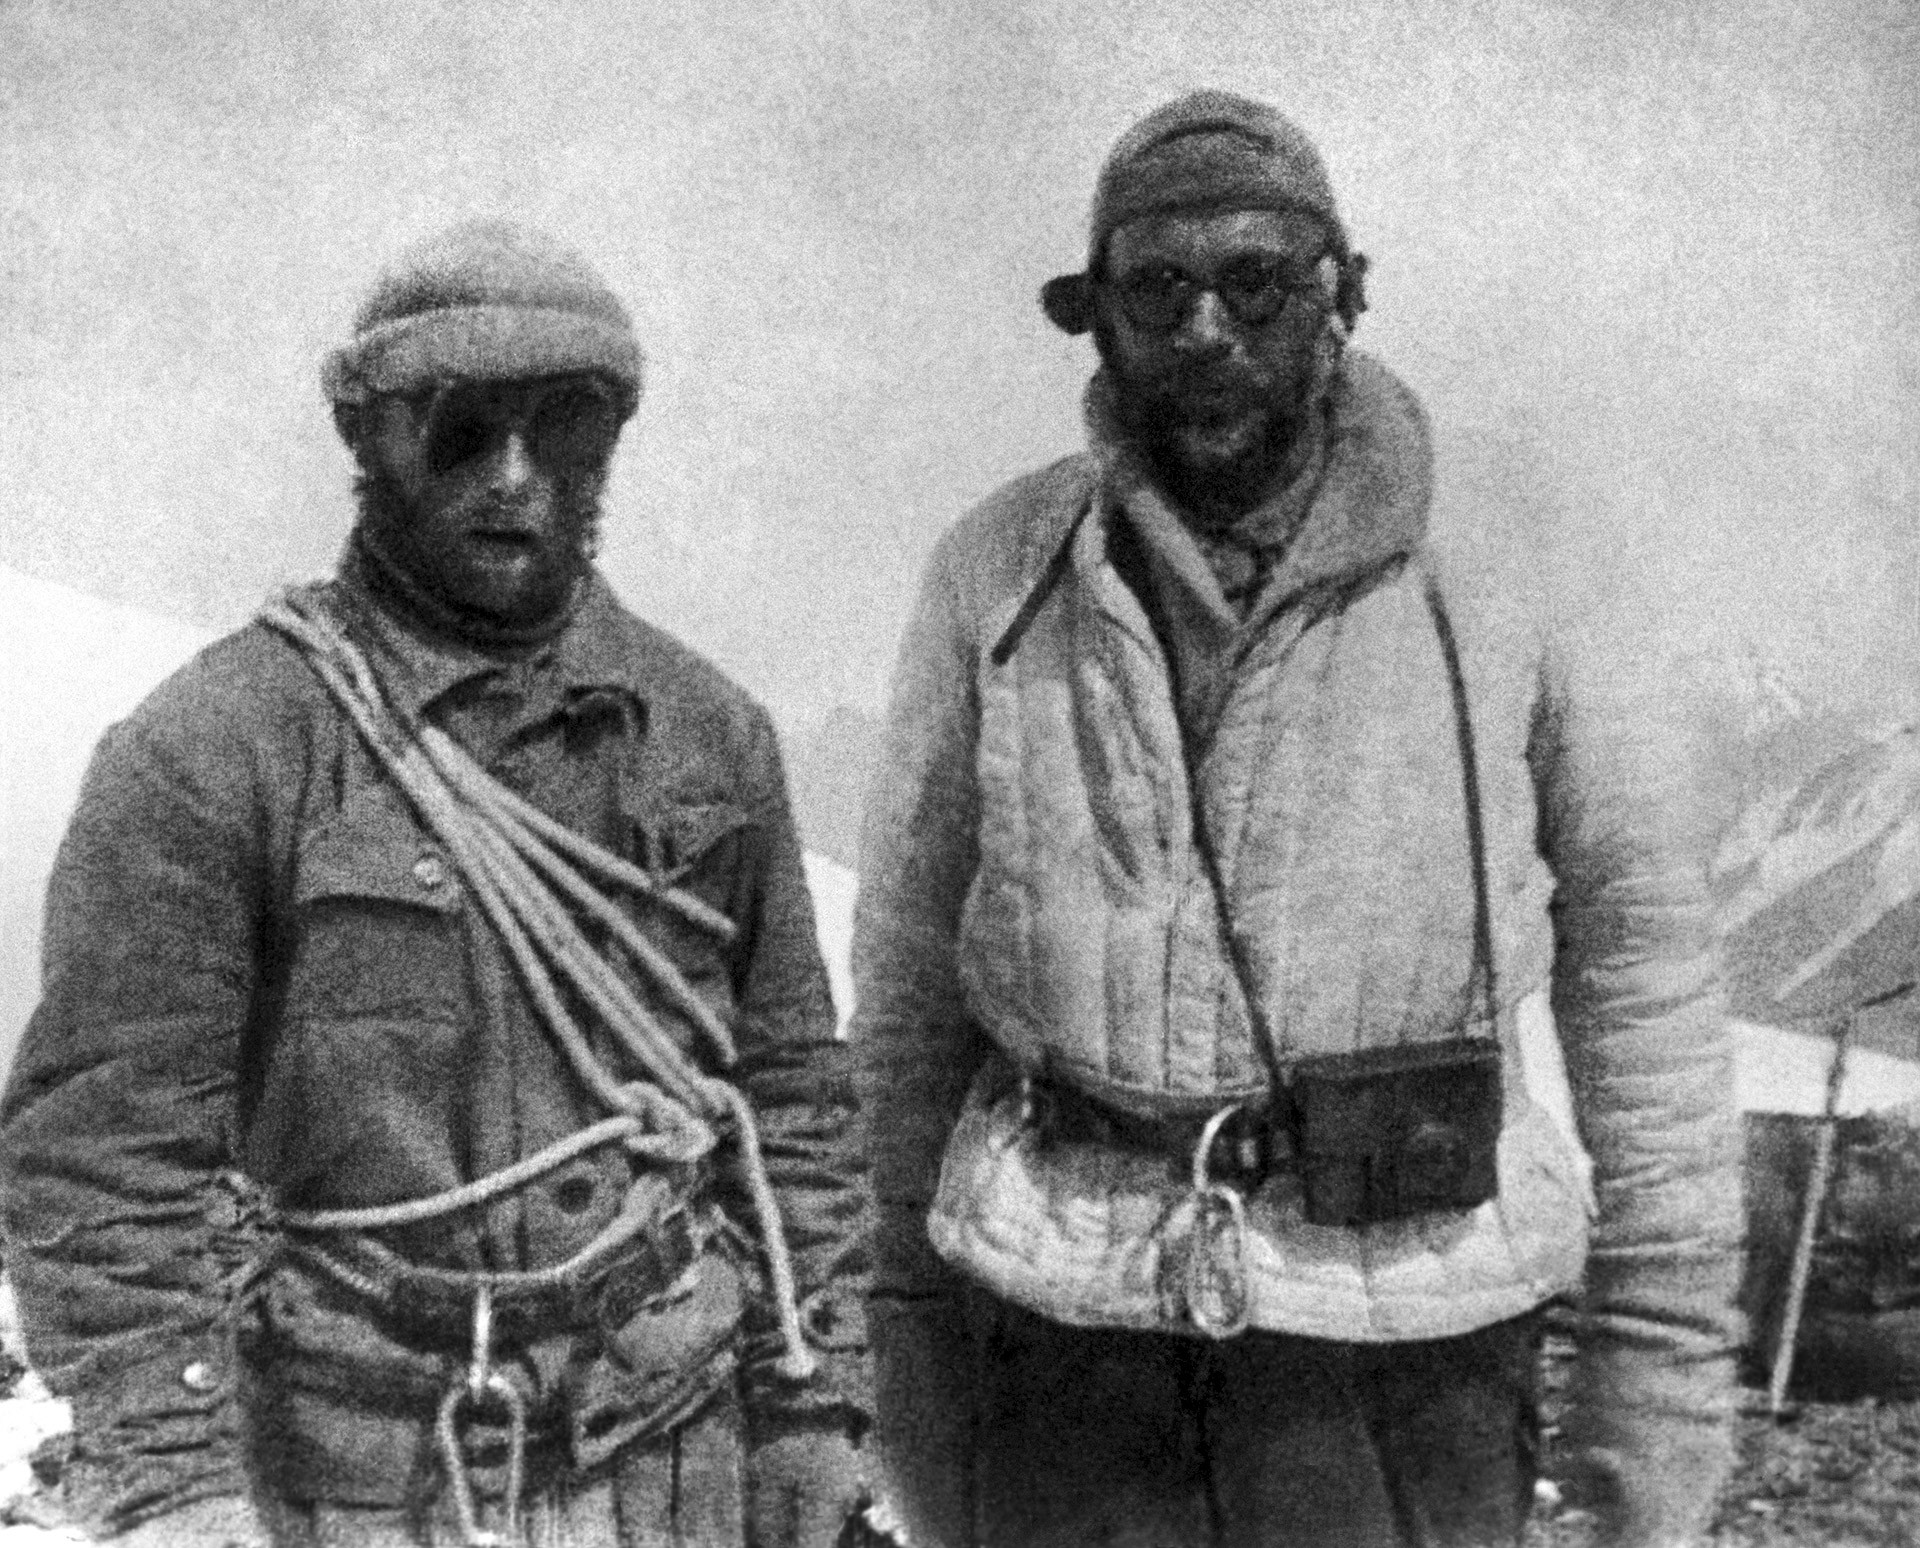 Јевгениј Абалаков (лево) и Николај Горбунов (десно), чланови „Одреда бр. 29“ који су у августу 1933. године кренули у освајање Стаљиновог врха.